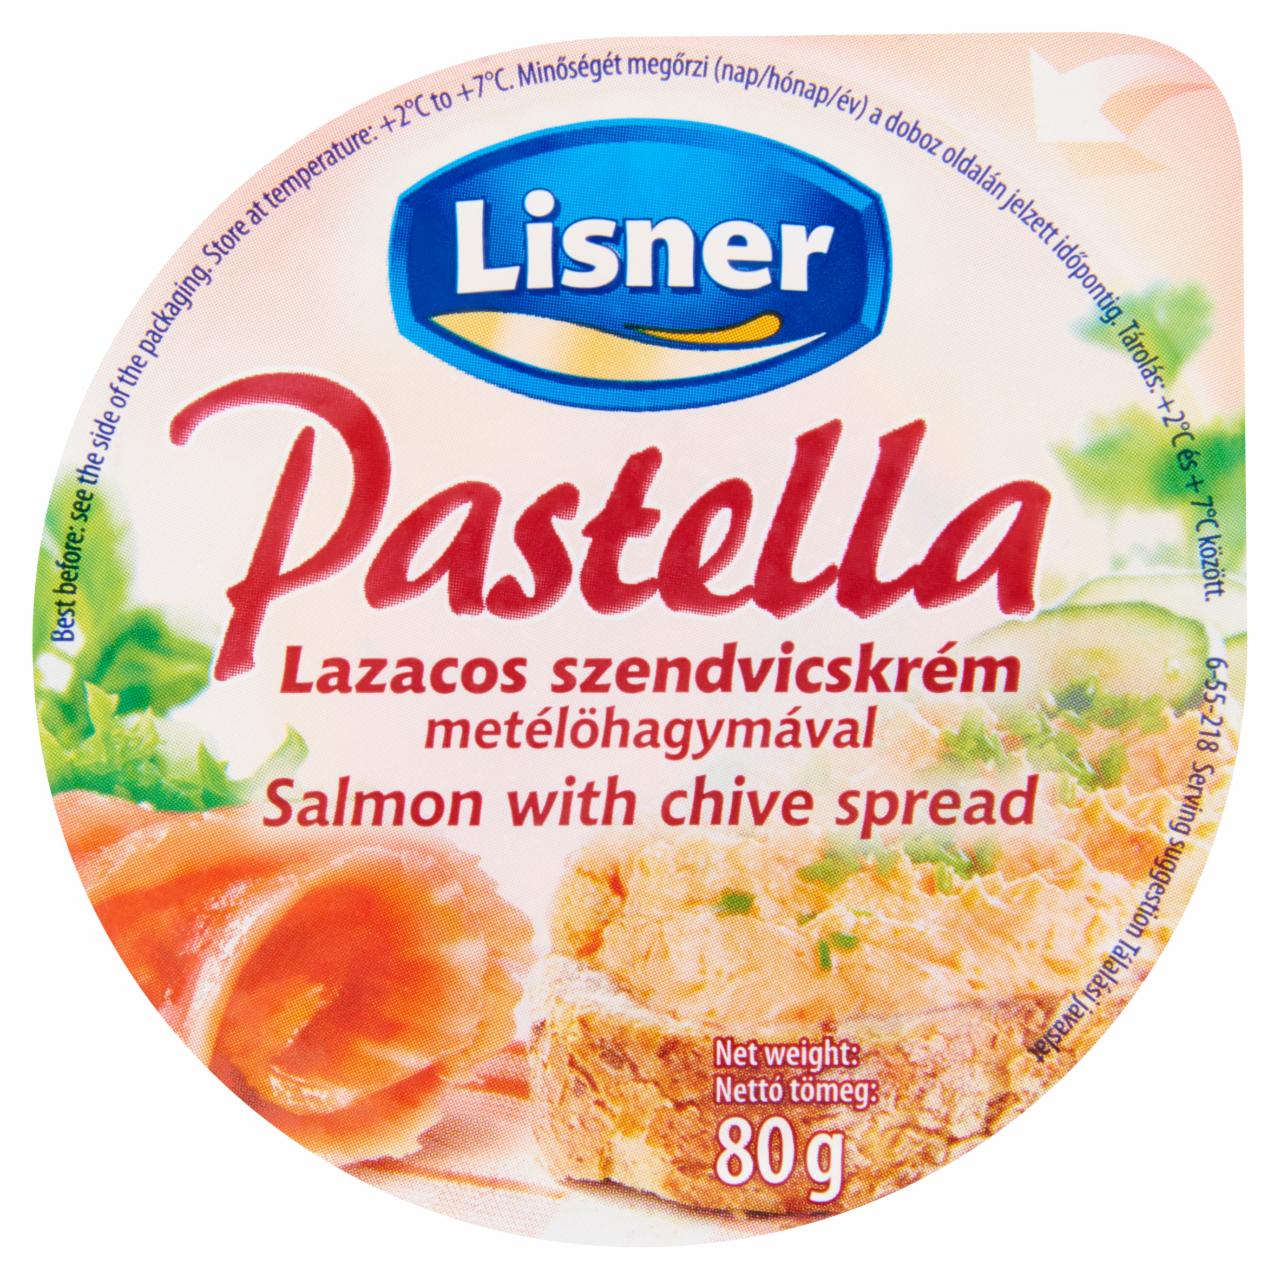 Képek - Lisner Pastella lazacos szendvicskrém metélőhagymával 80 g